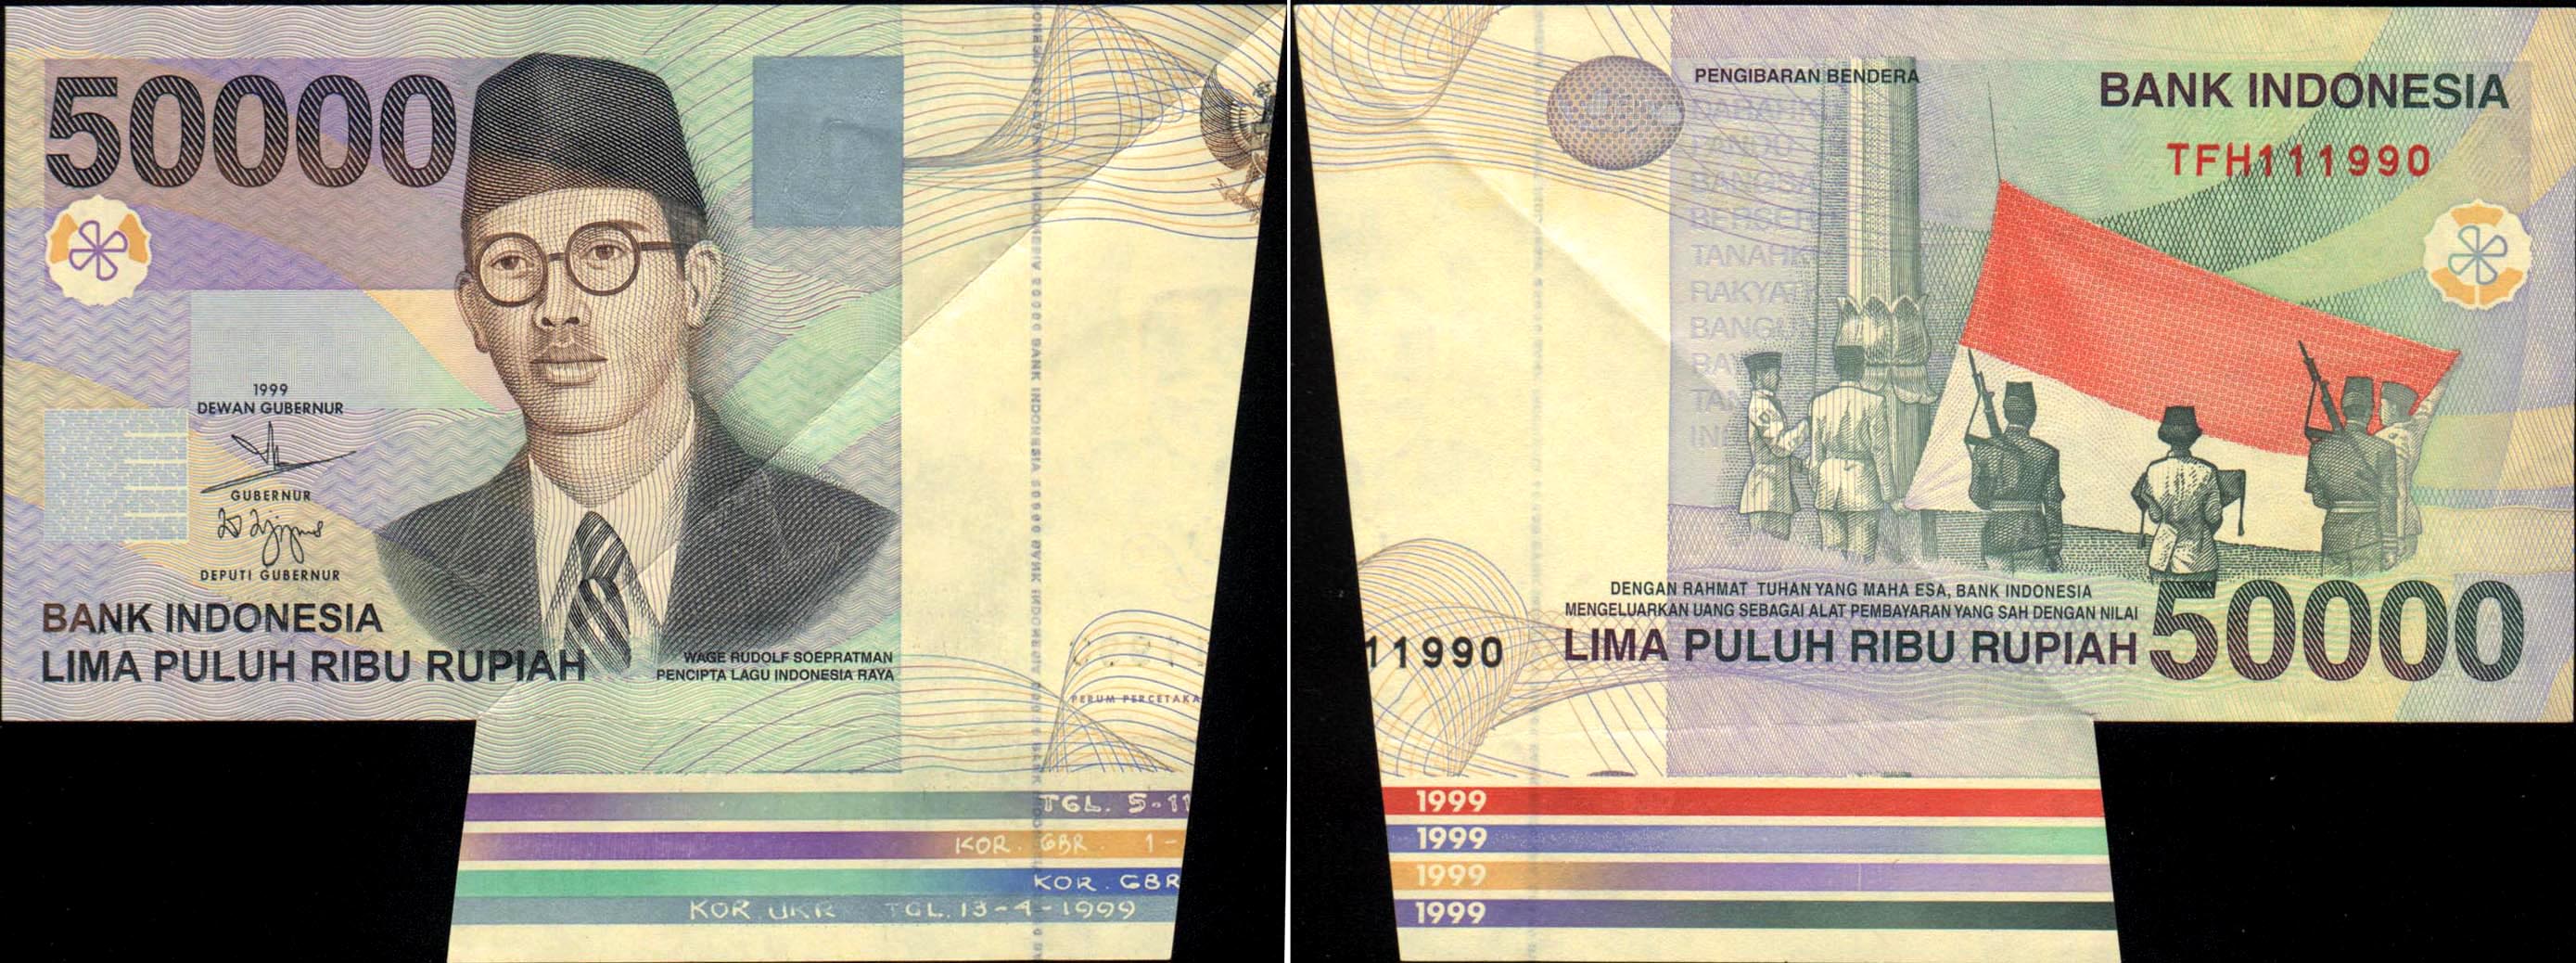 印度尼西亚 1990年 50000卢比 印尼罕见奇特错票 序号